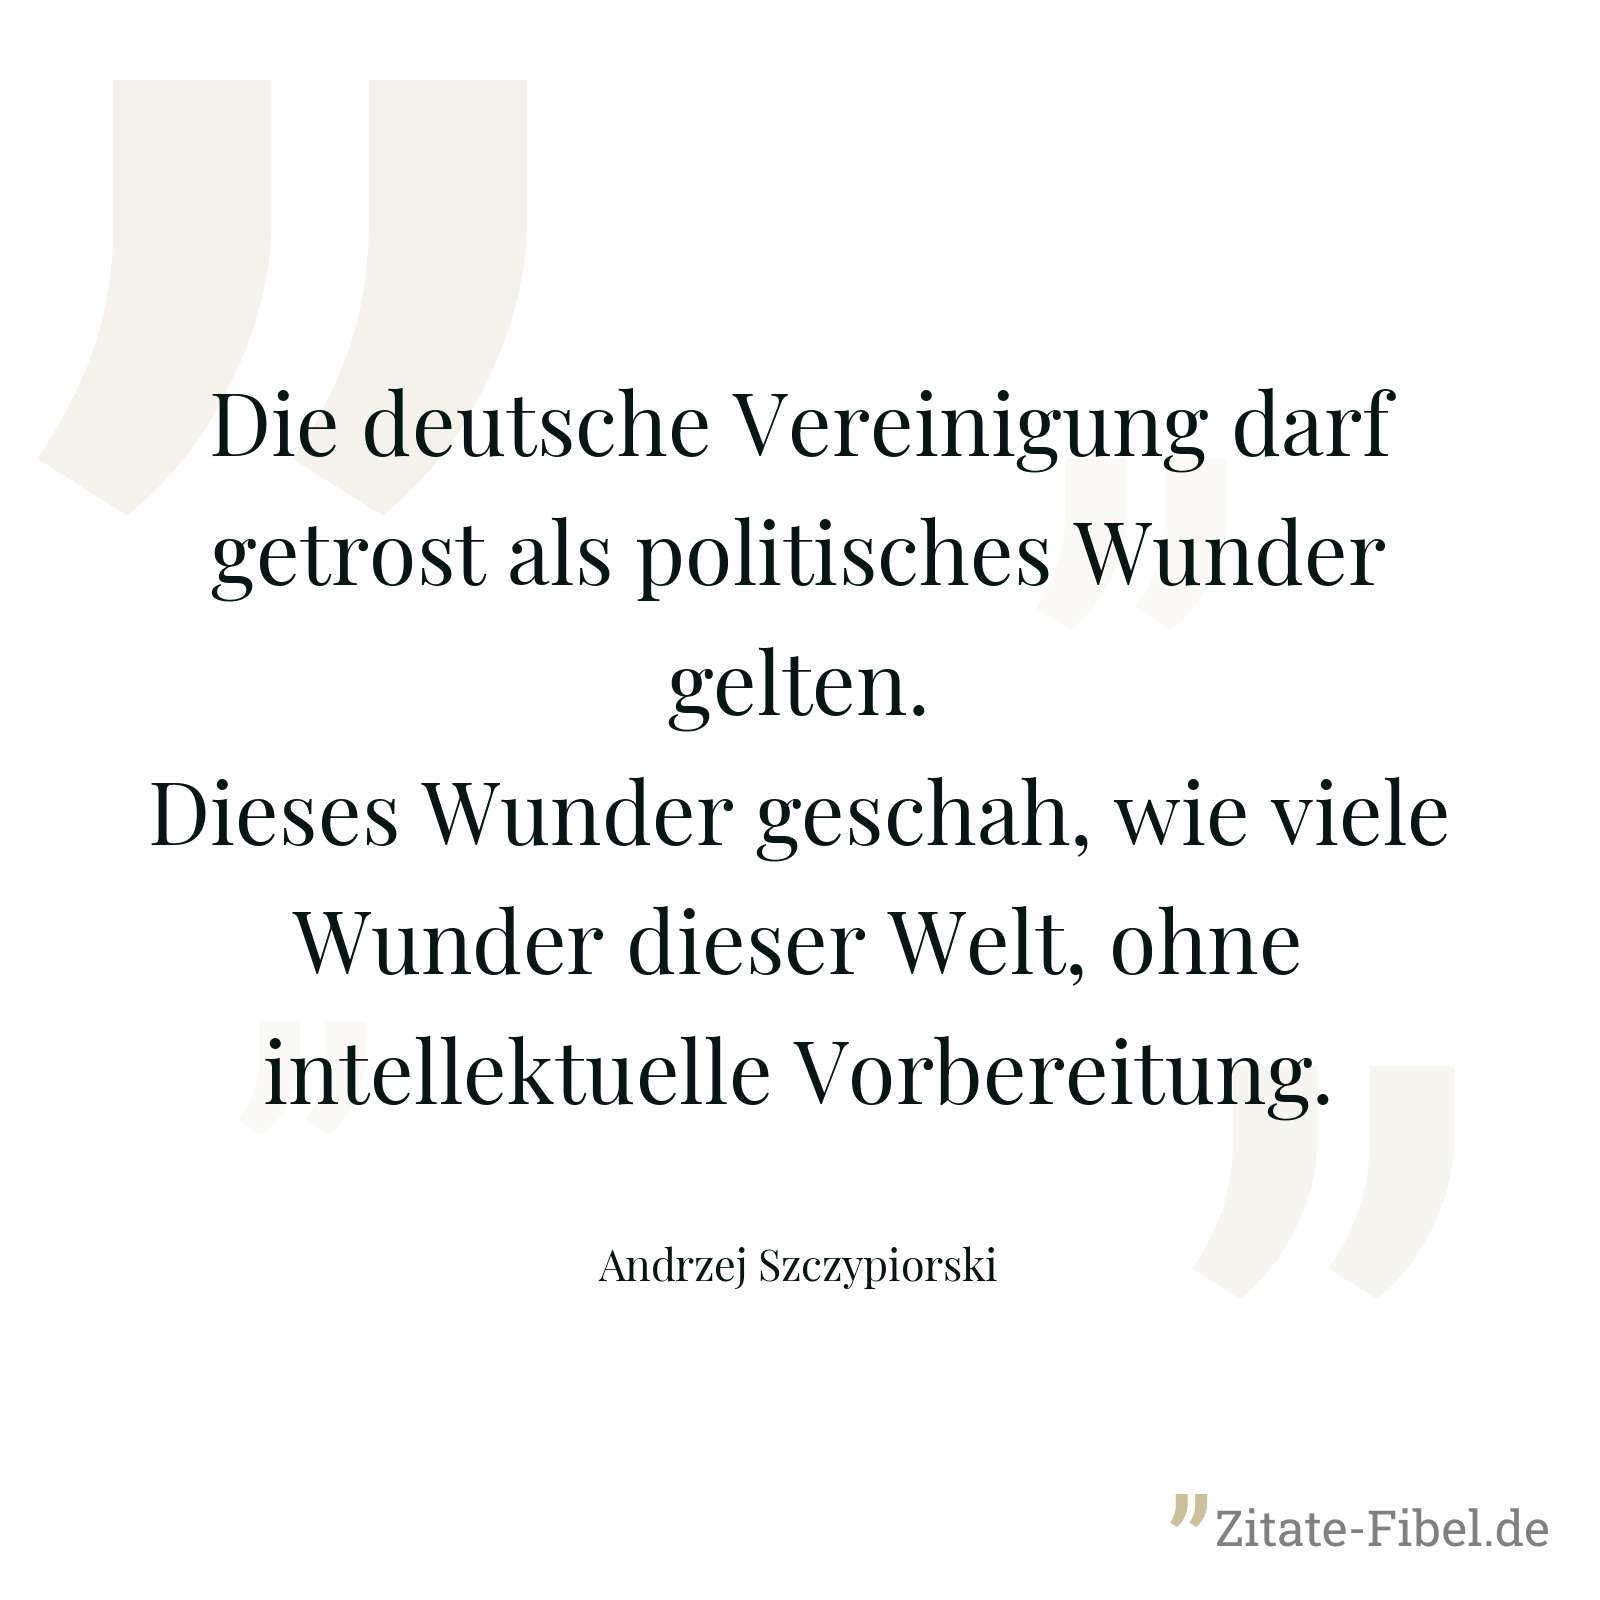 Die deutsche Vereinigung darf getrost als politisches Wunder gelten. Dieses Wunder geschah, wie viele Wunder dieser Welt, ohne intellektuelle Vorbereitung. - Andrzej Szczypiorski